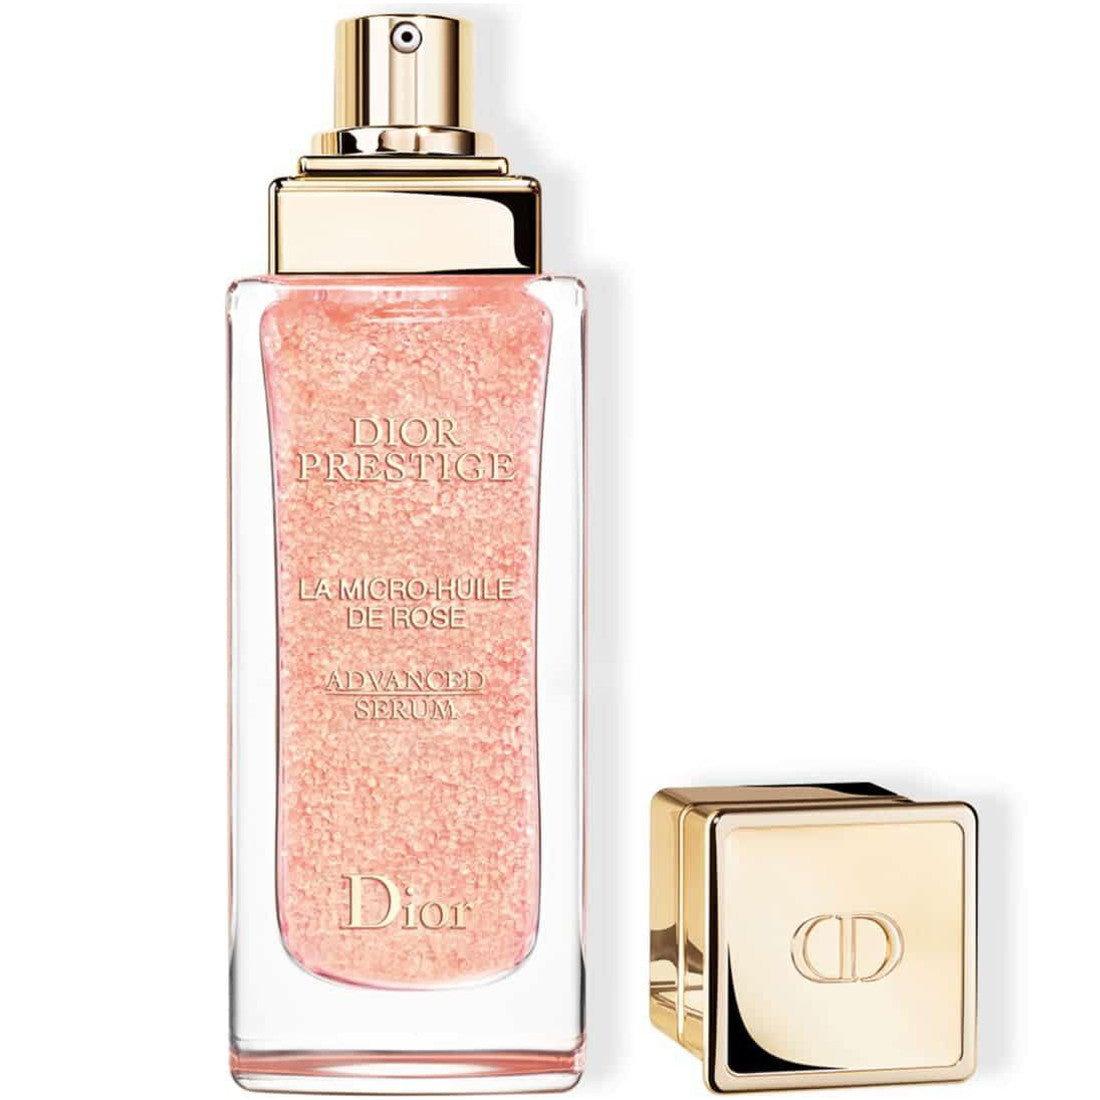 Dior Prestige La Micro-Huile de Rose Advanced Serum Age Defying